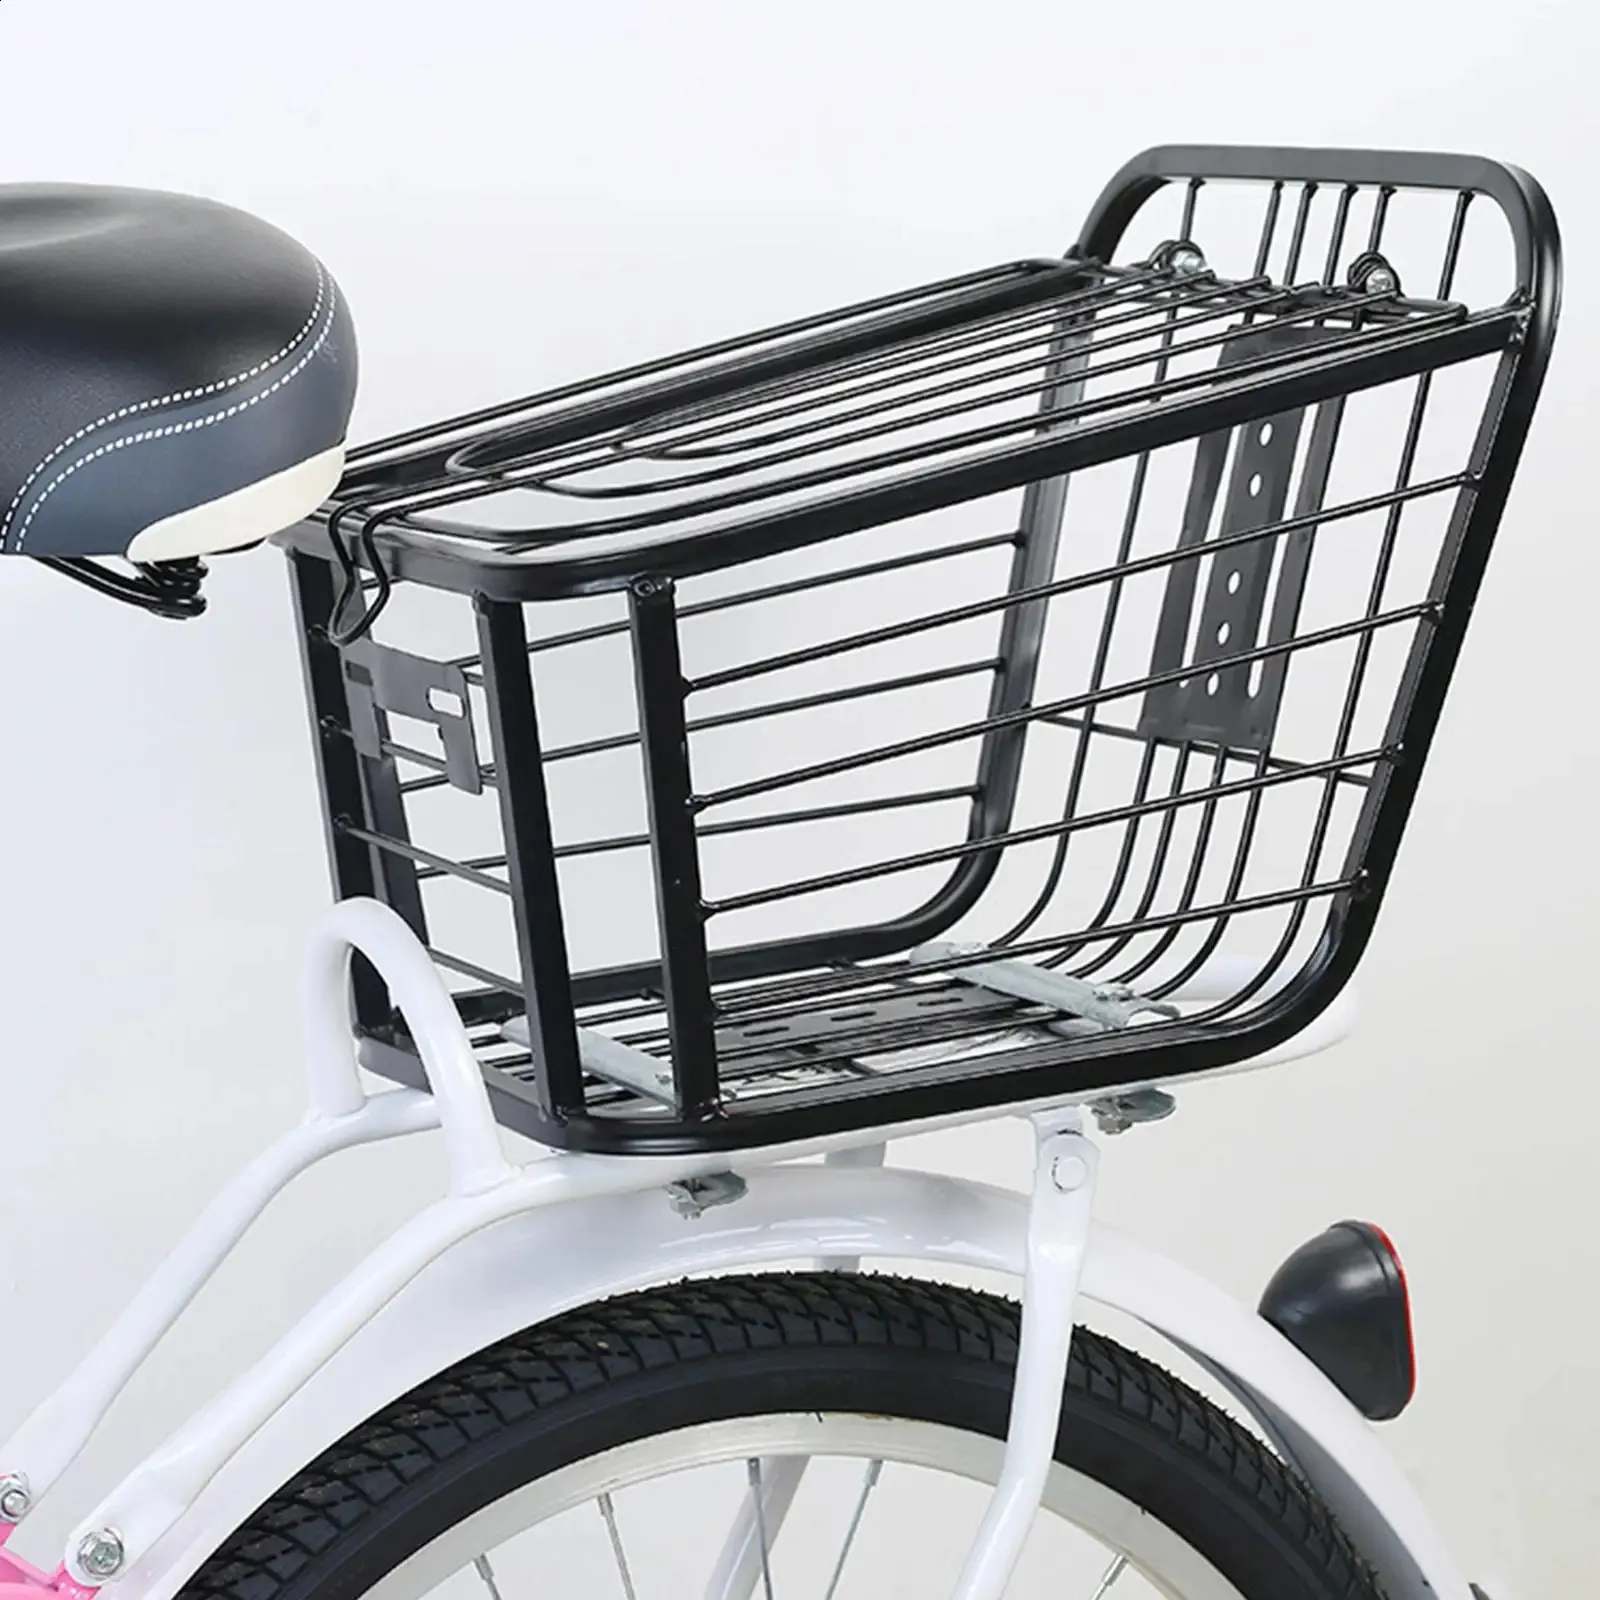 Bike Basket Shopping Bag Sundries Hanging Bicycle Storage Basket for Riding Cycling Women